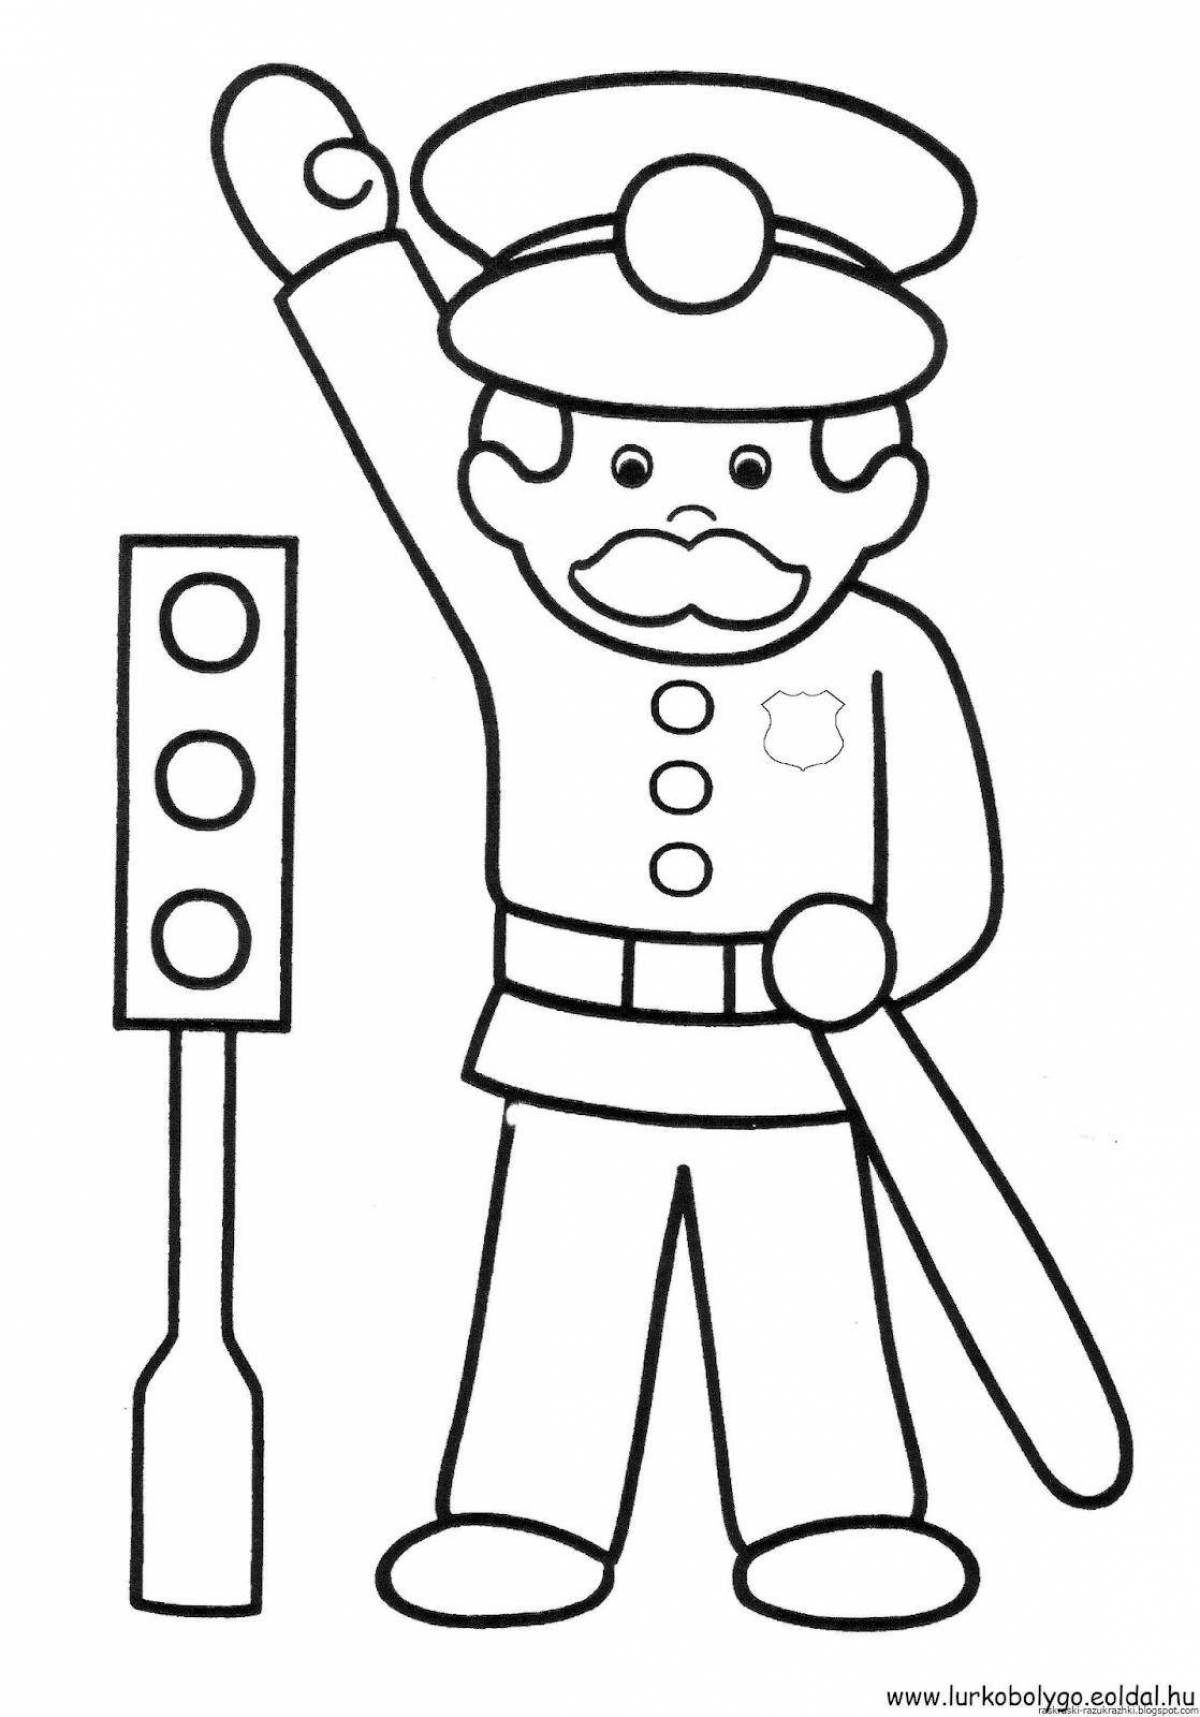 Traffic police inspector for children #1